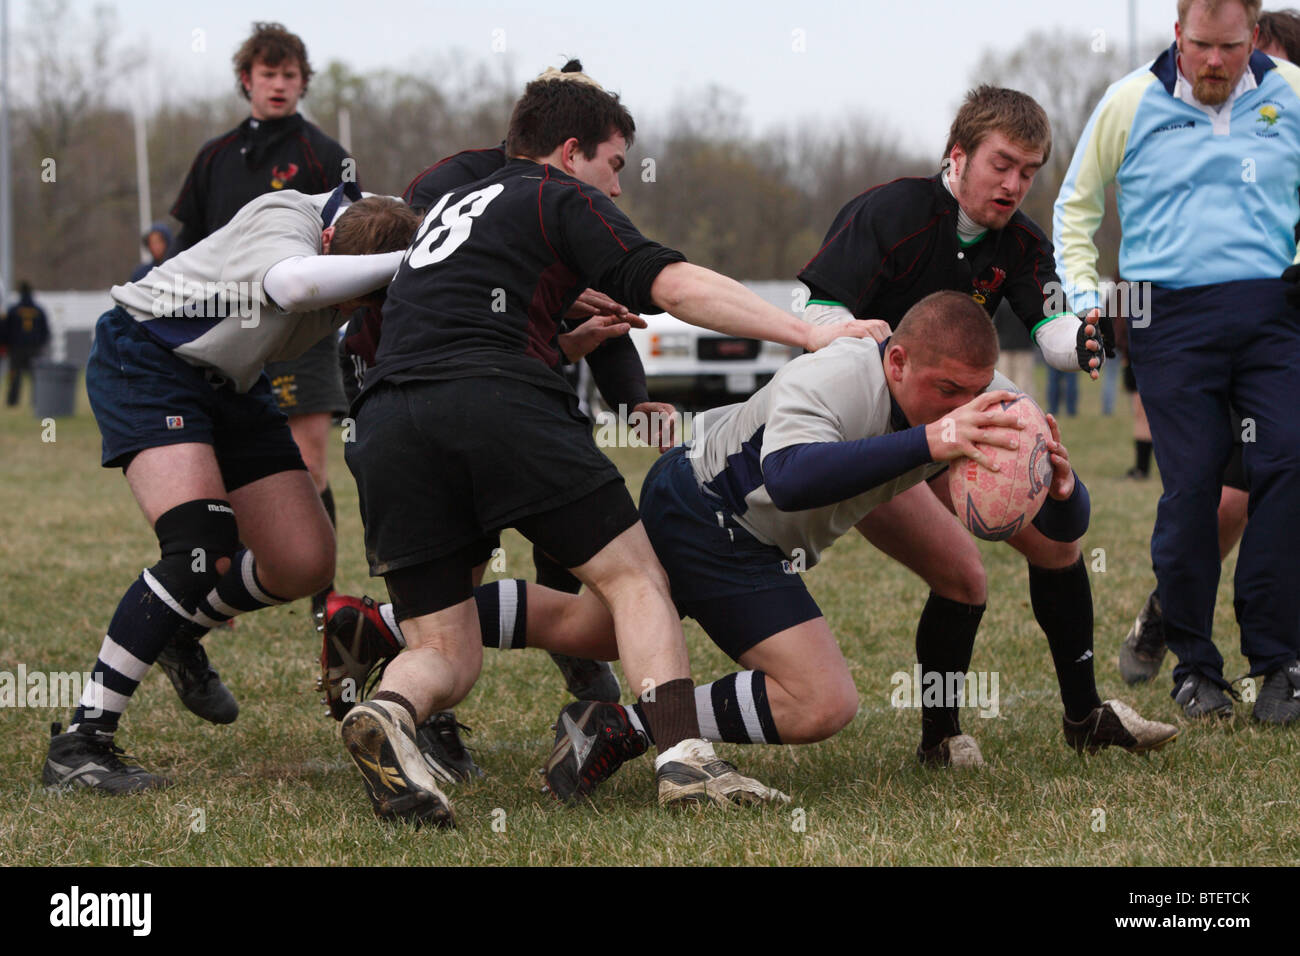 Eine Georgetown University Rugby-Spieler erhält einen Versuch gegen die Temple University während eines Spiels. Stockfoto